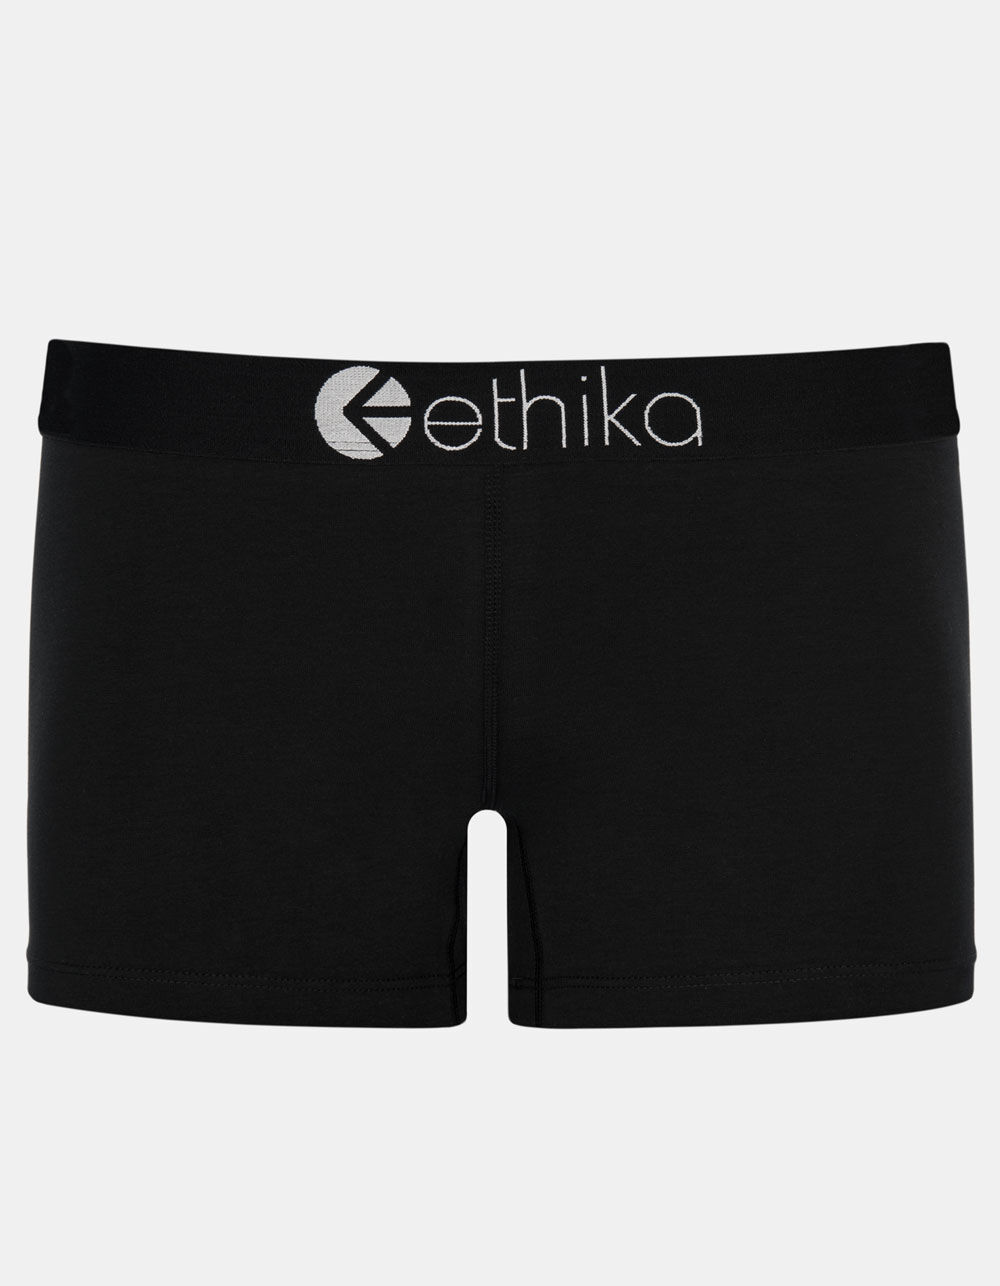 ethika, Intimates & Sleepwear, Womens Ethika Bomber Slyme Ball Bra And  Shorts